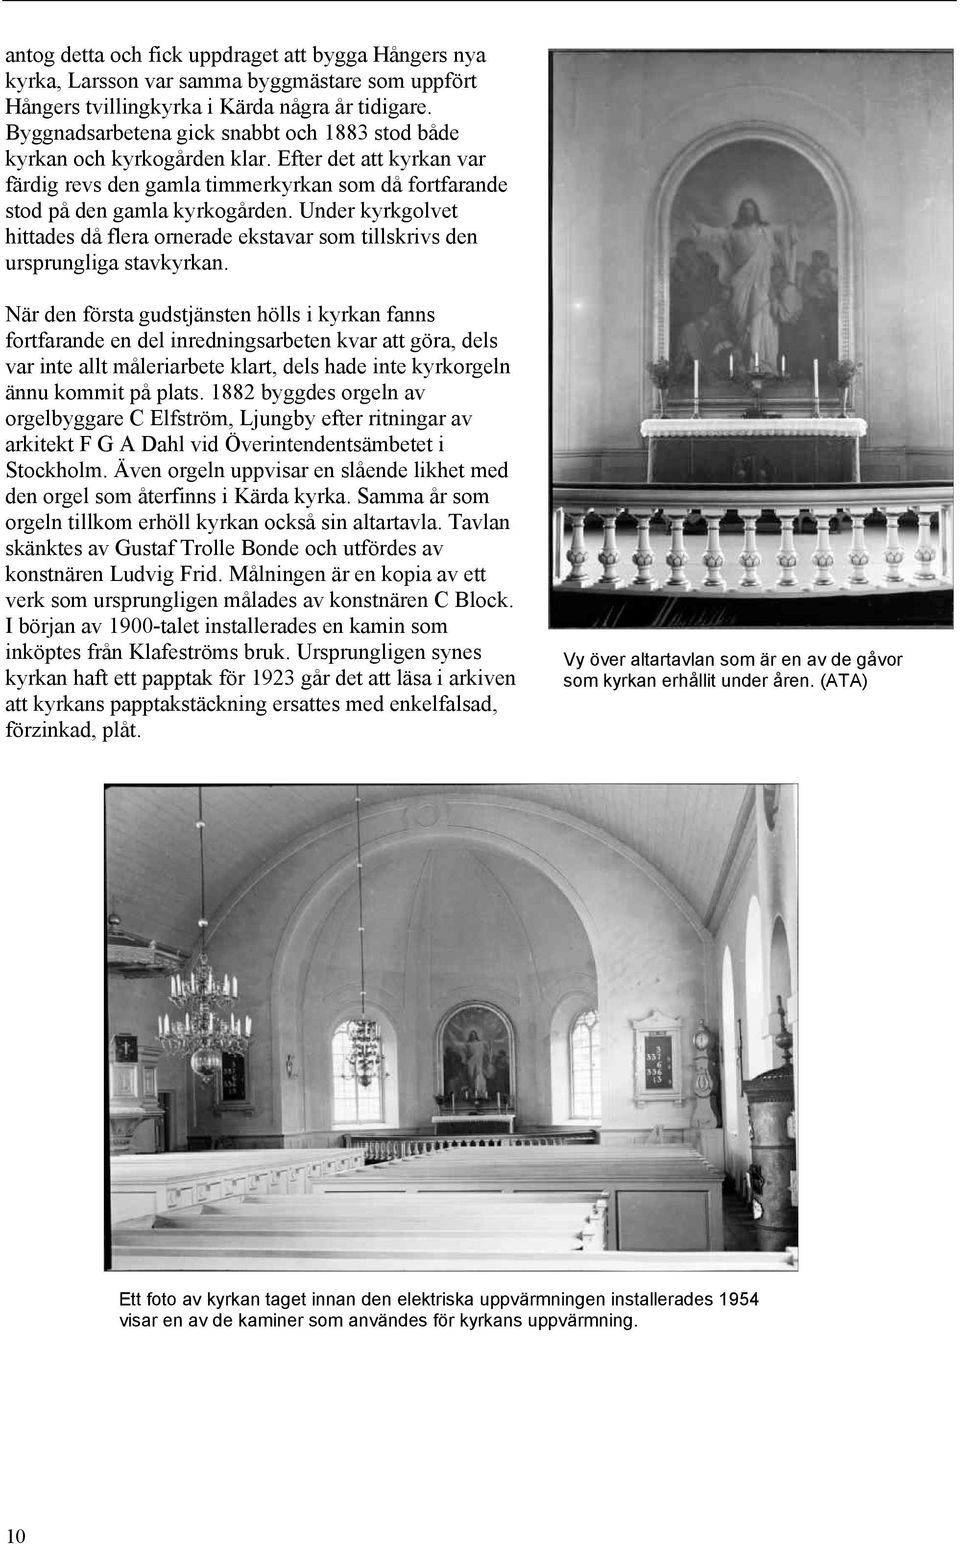 Under kyrkgolvet hittades då flera ornerade ekstavar som tillskrivs den ursprungliga stavkyrkan.